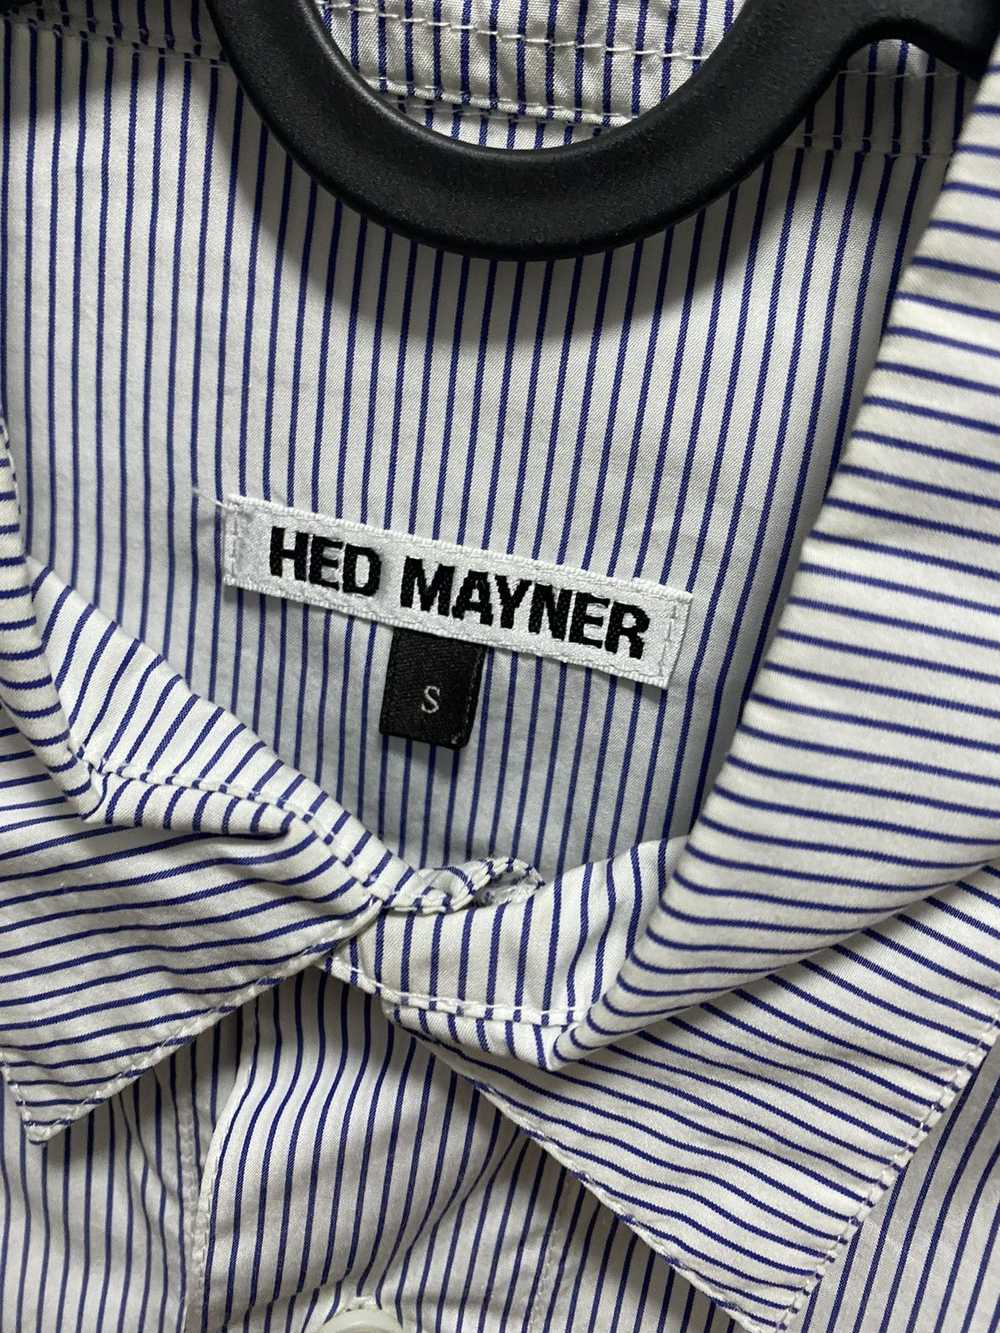 Hed Mayner Striped oversized shirt - image 5